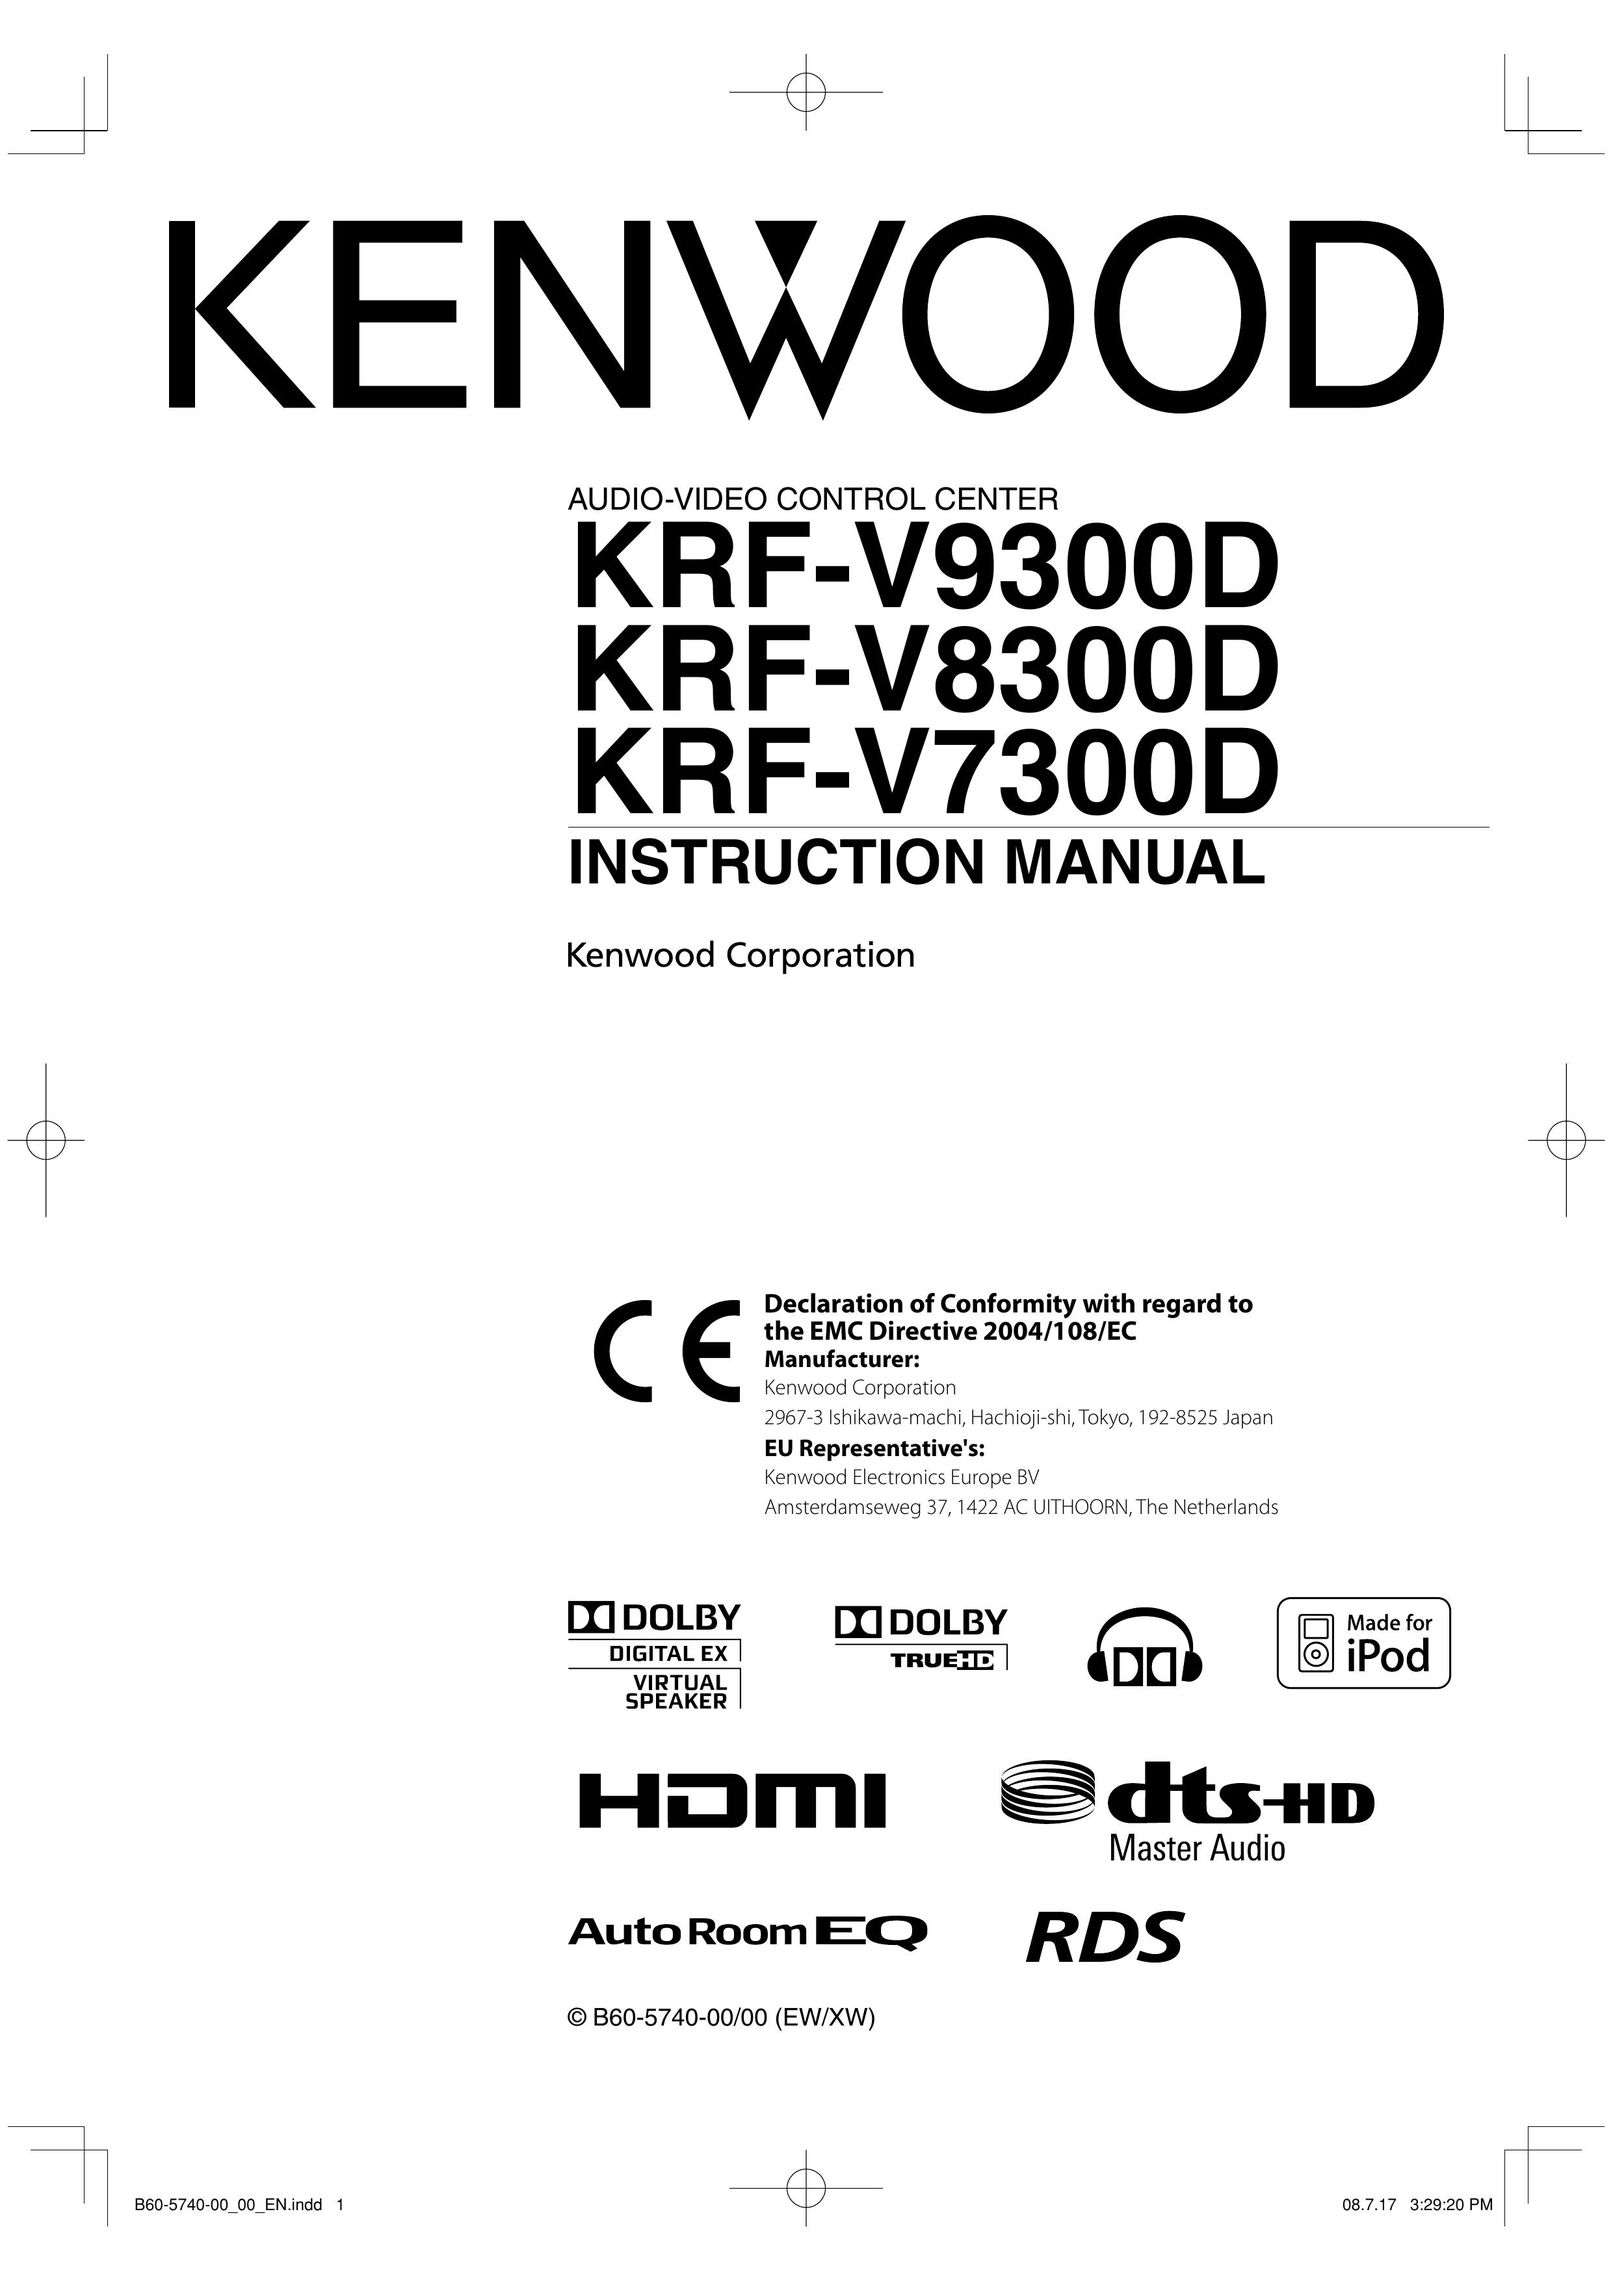 Kenwood KRF-9300D DVD Player User Manual